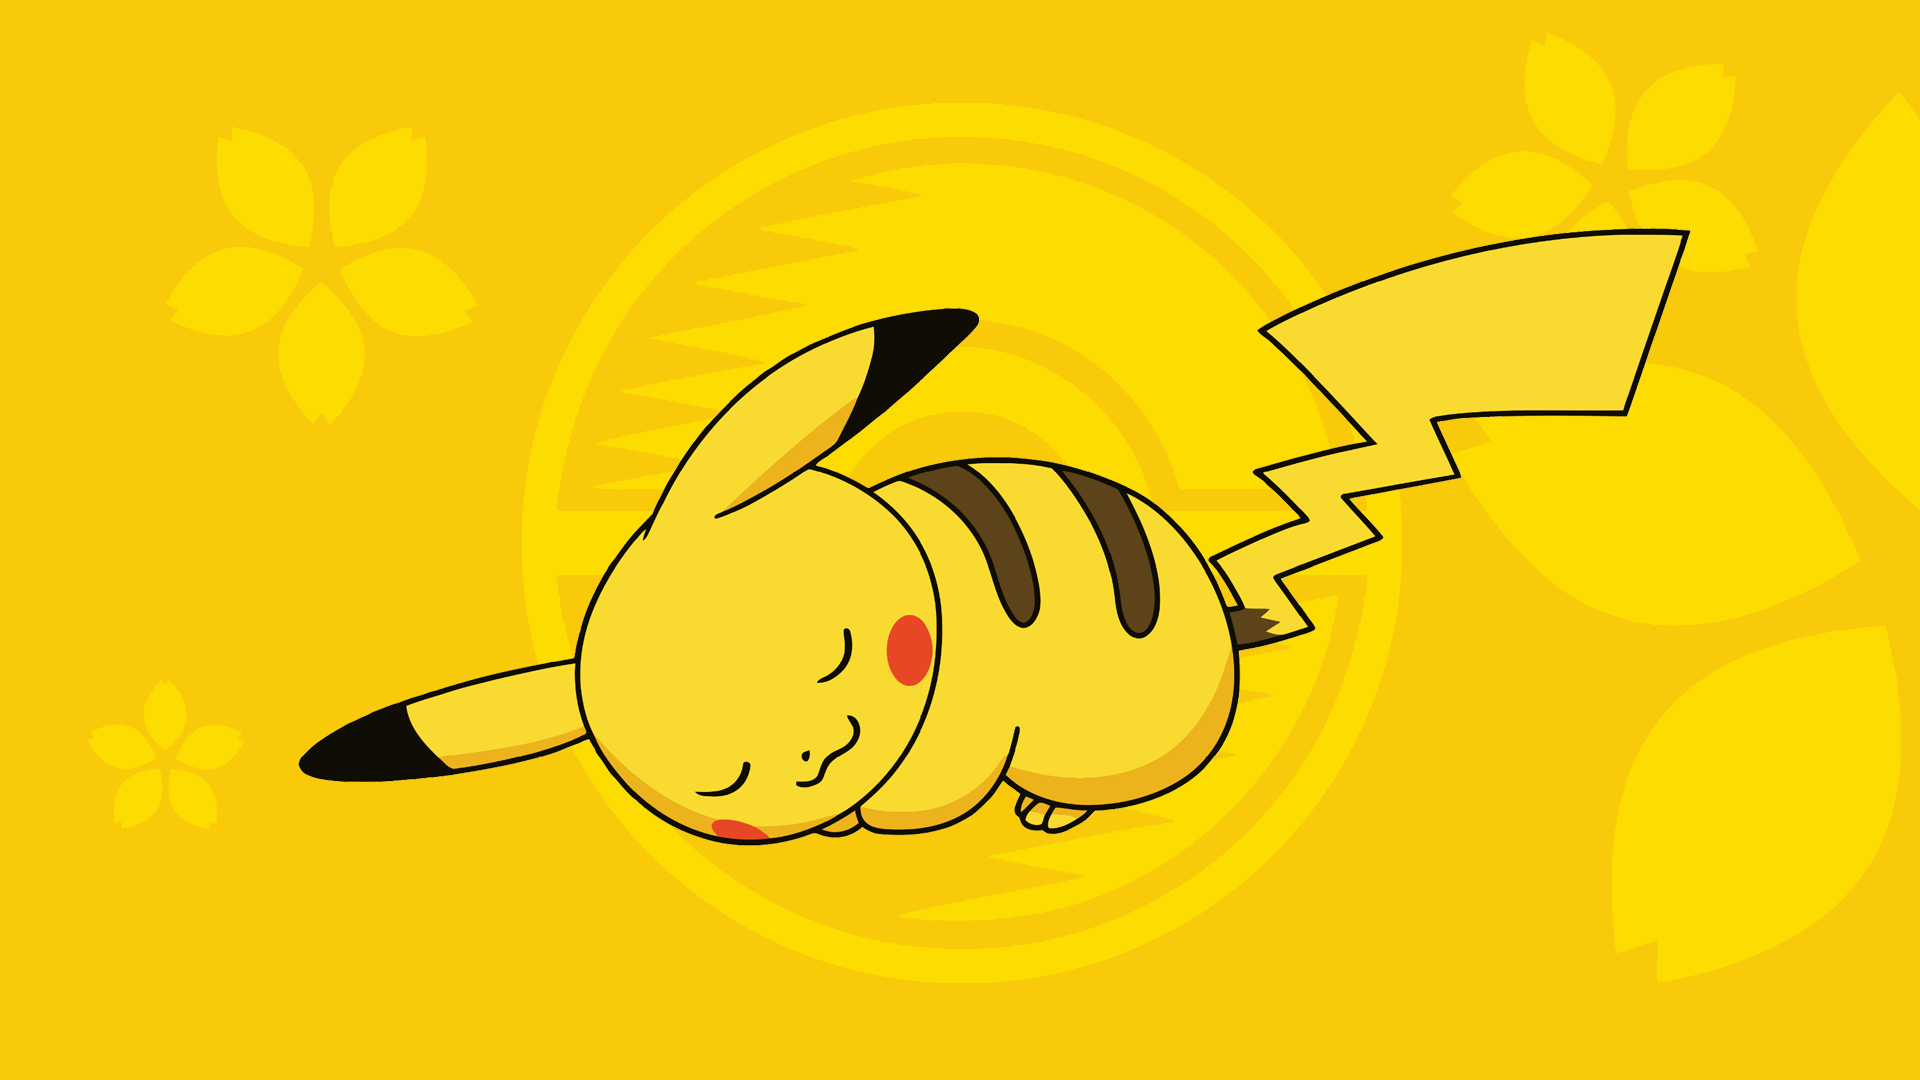 cute pikachu pokemon wallpaper